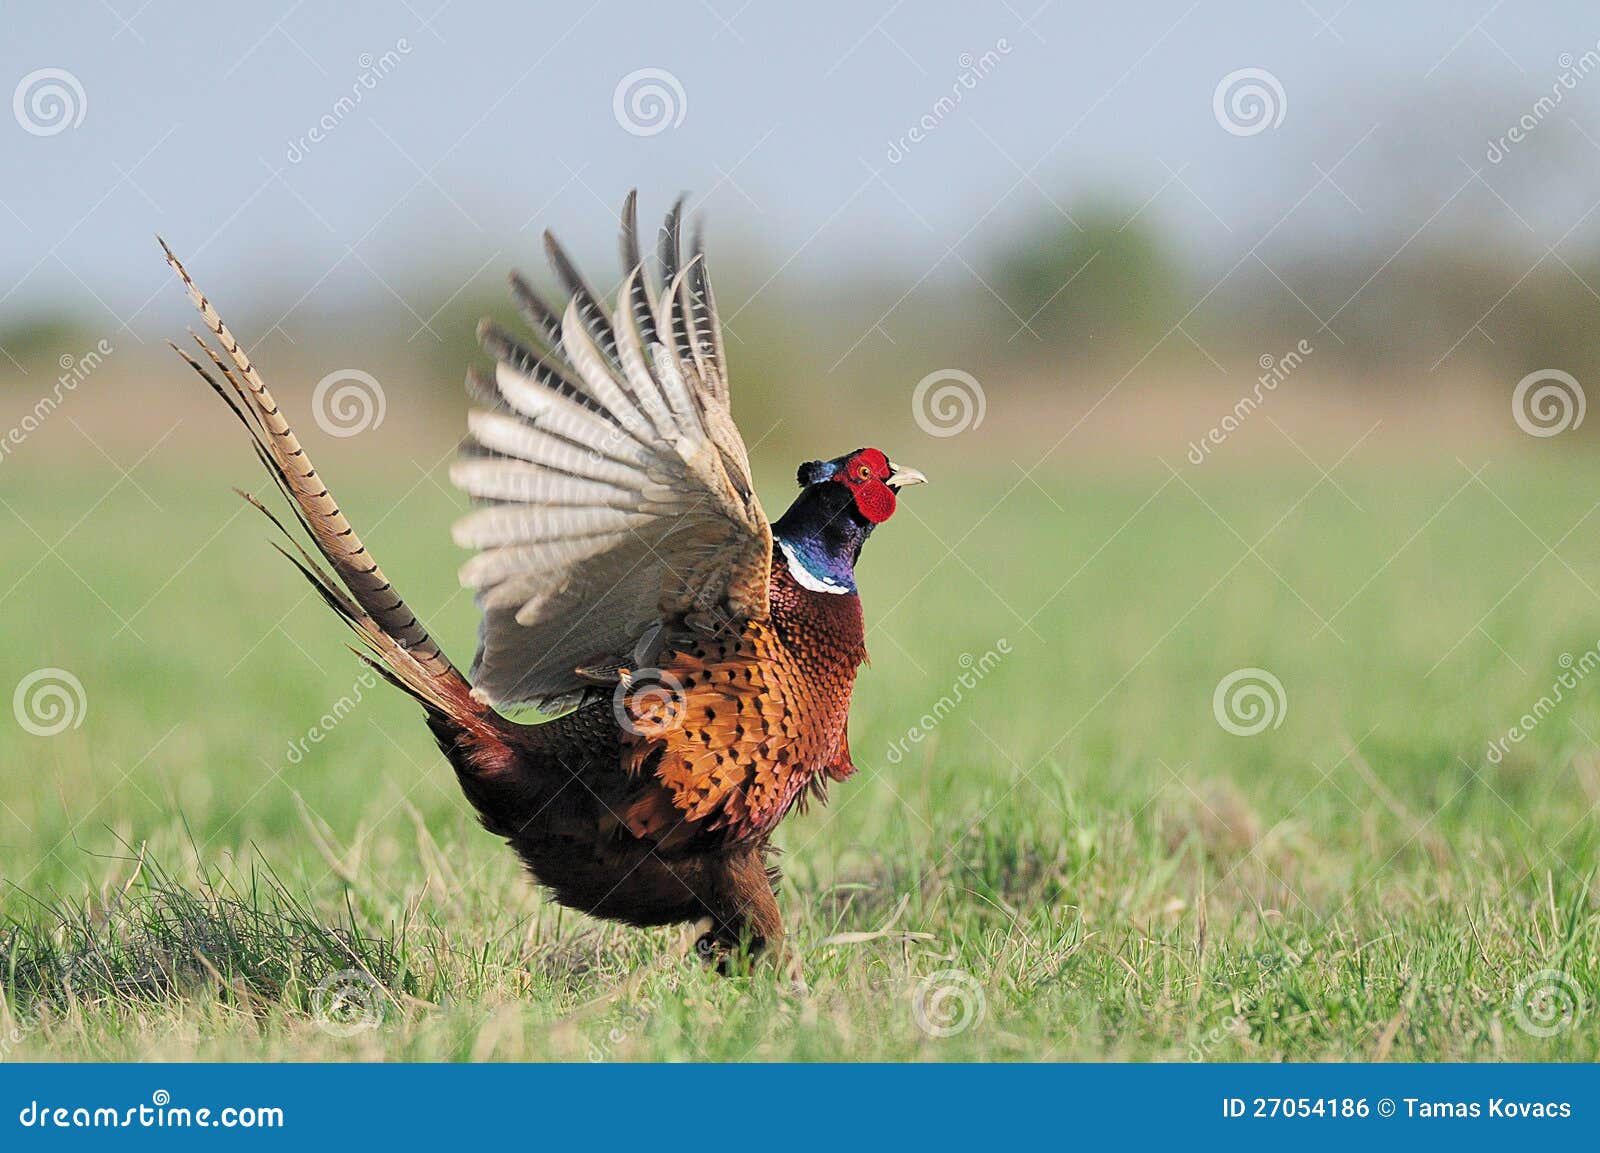 dancing pheasant